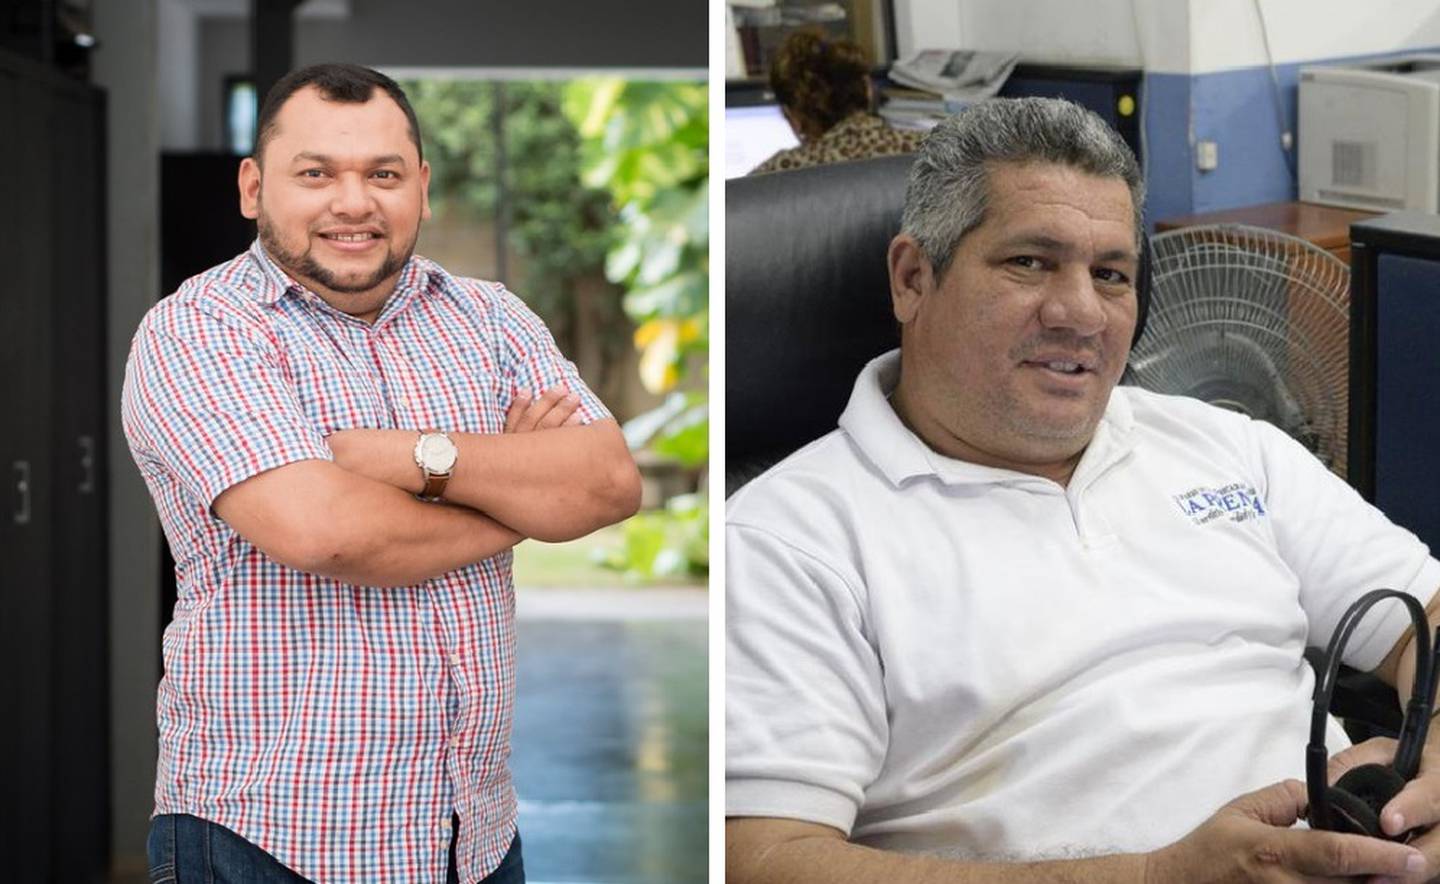 Periodistas nicaragüenses Álvaro Navarro y Emiliano Chamorro recorrieron hospitales privados buscando atención, pero áreas de Cuidados Intensivos están desbordadas